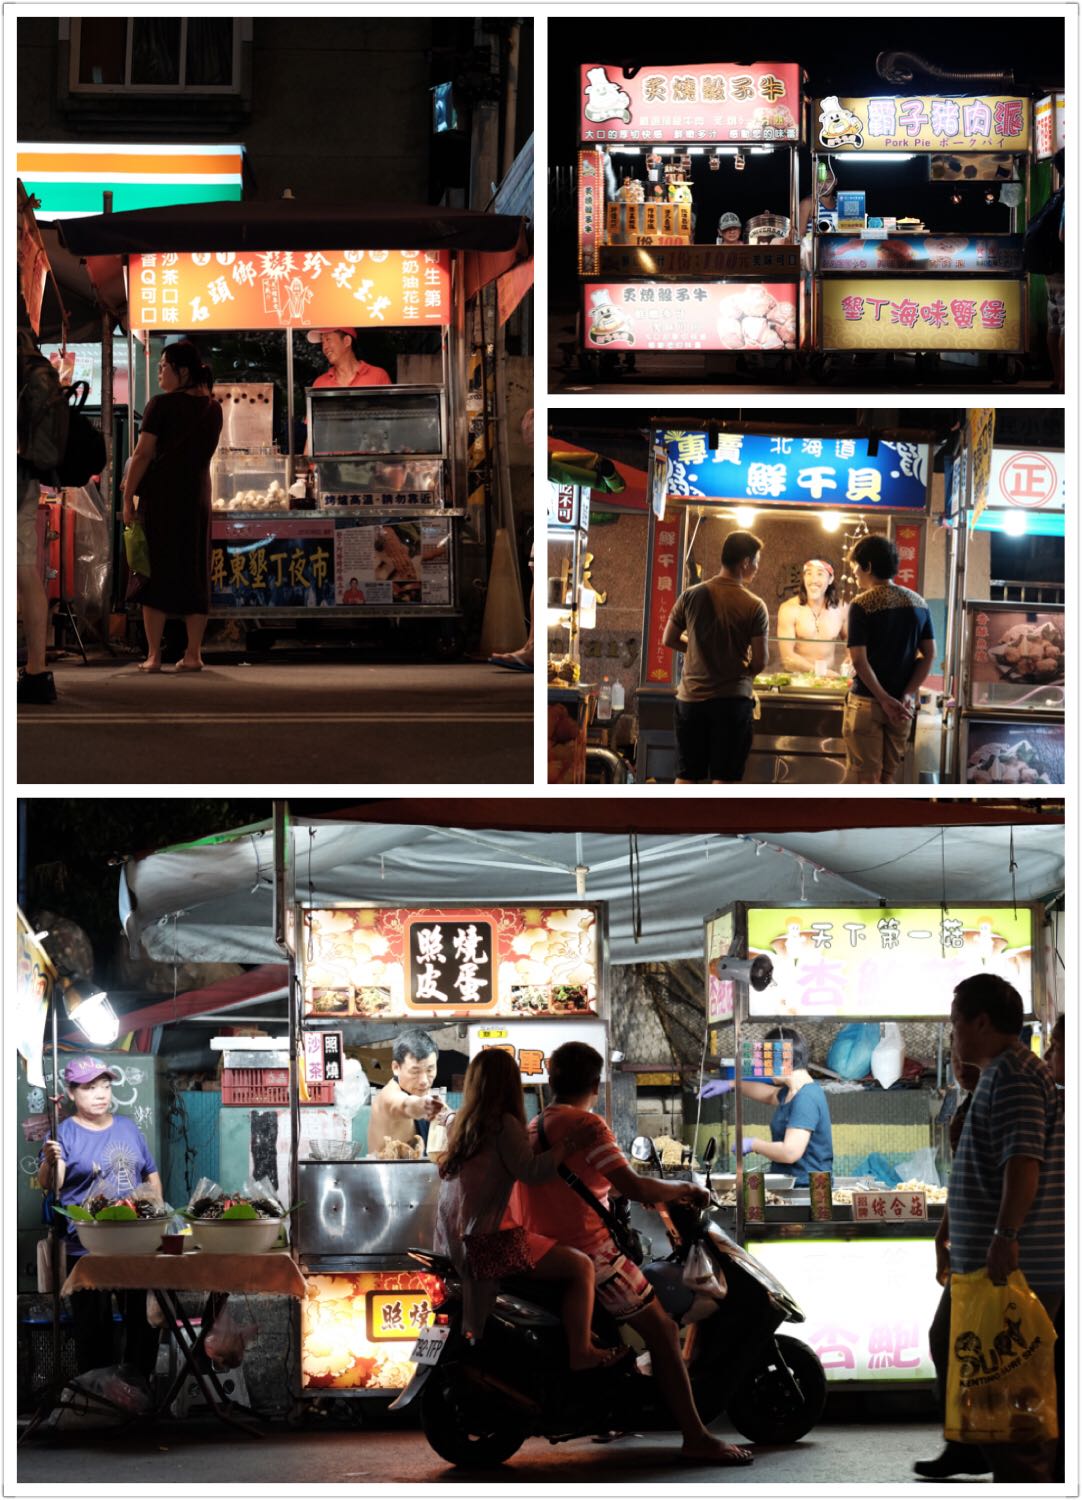 最爱的台湾夜市，好吃的简直太多了，还有很多小玩意可以买，明信片、纪念品